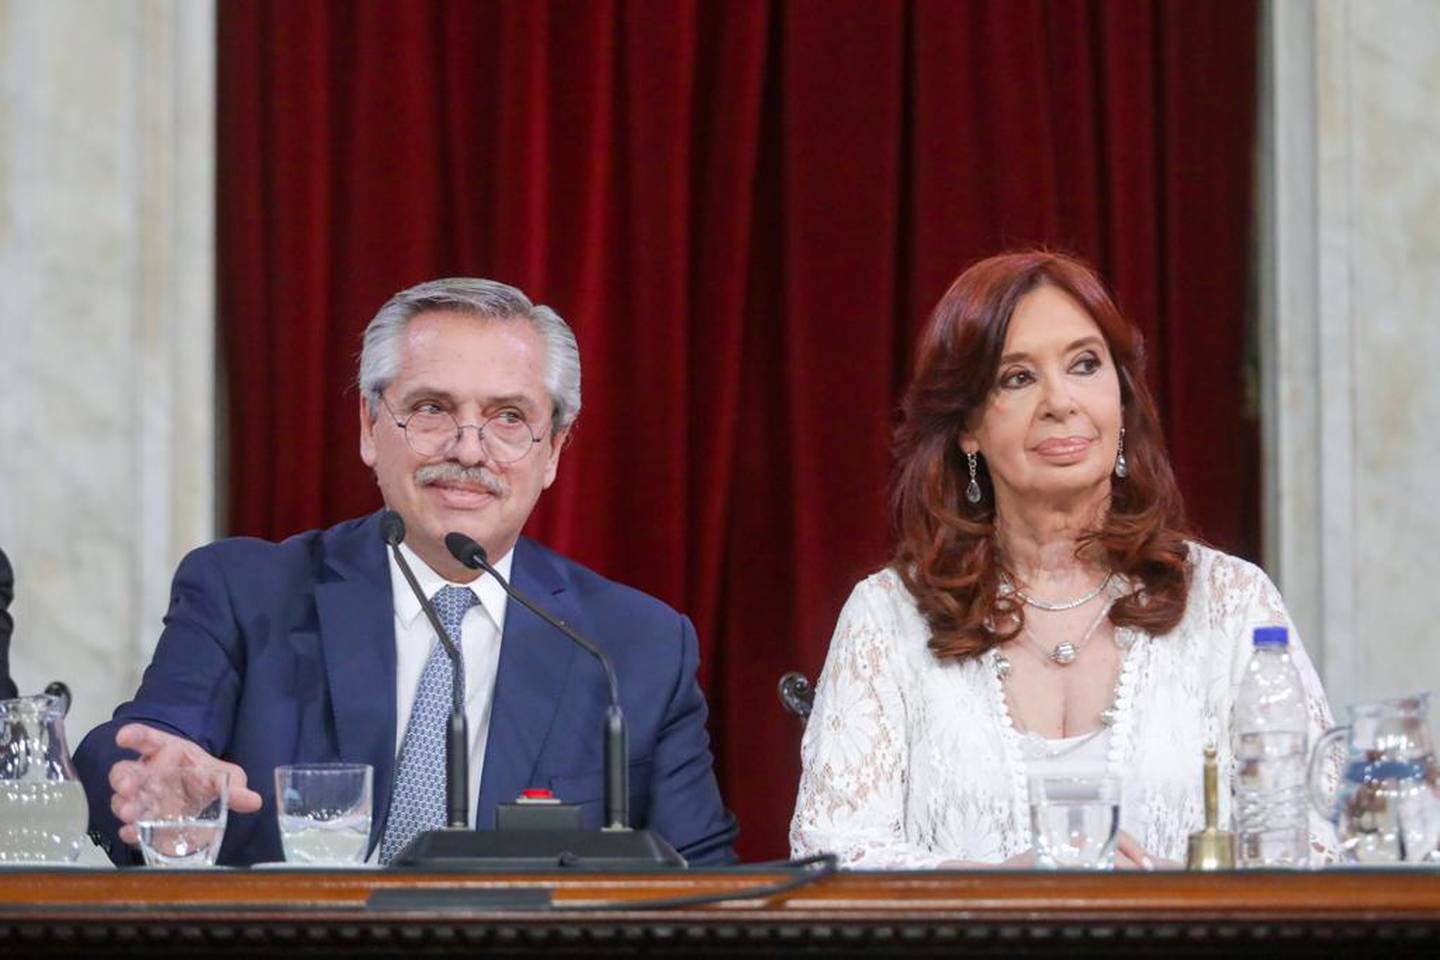 El presidente y la vicepresidenta de la Nación acordaron este domingo el nombramiento de Silvina Batakis en el Ministerio de Economía, pero no hubo una conferencia de prensa.